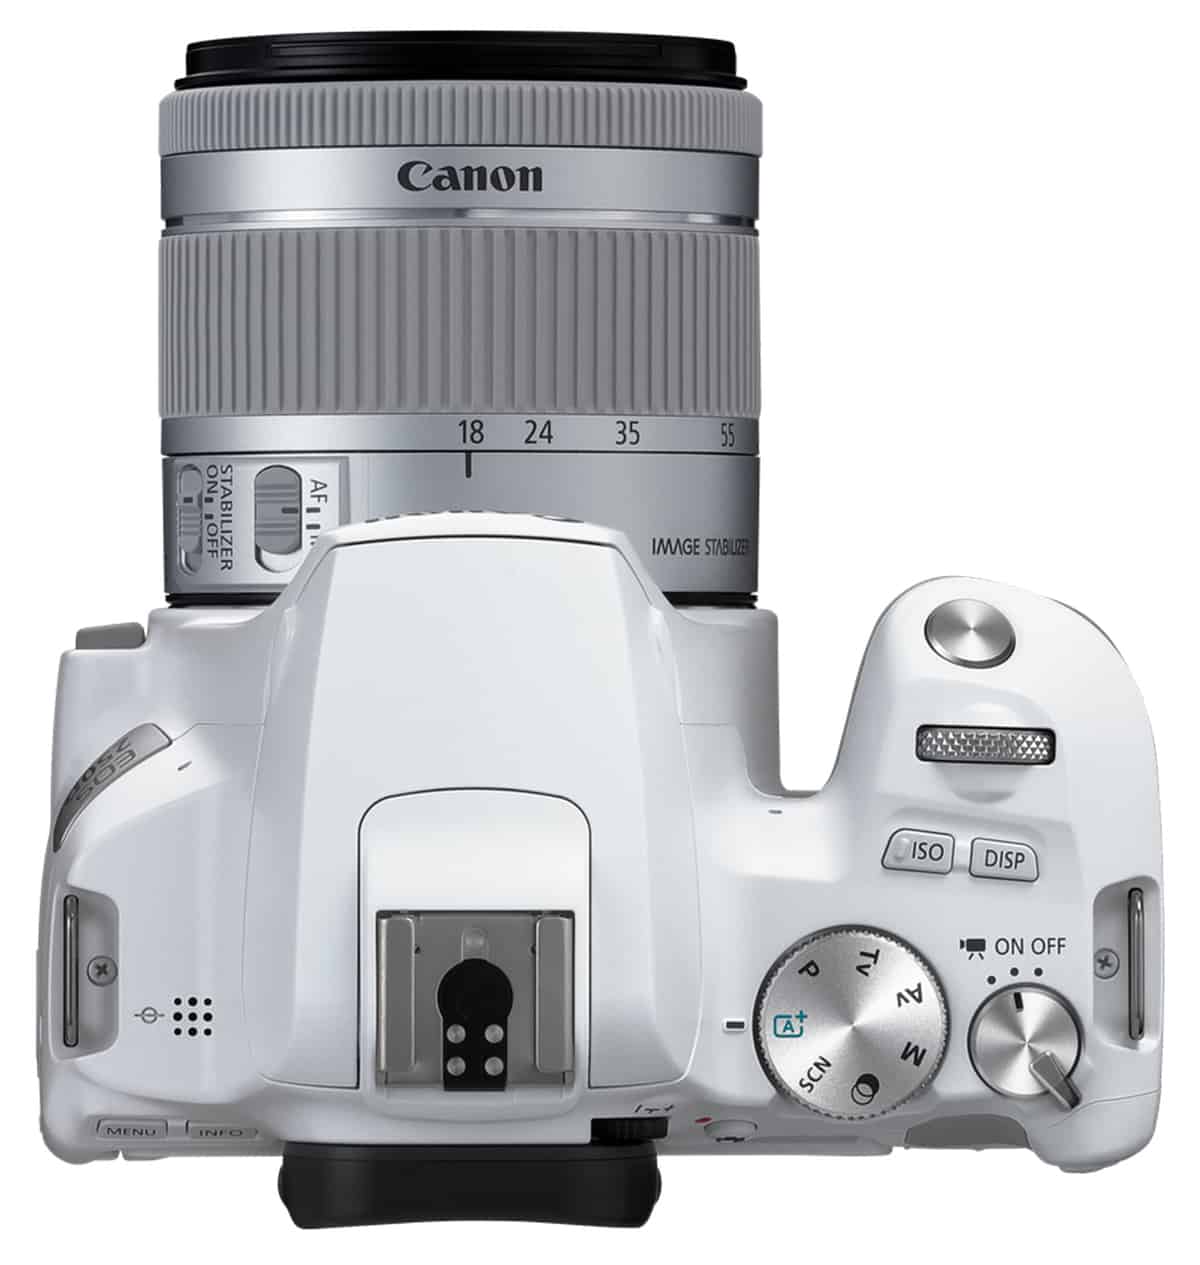 Canon EOS 20D   neues Modell in der Einsteiger Klasse   d pixx